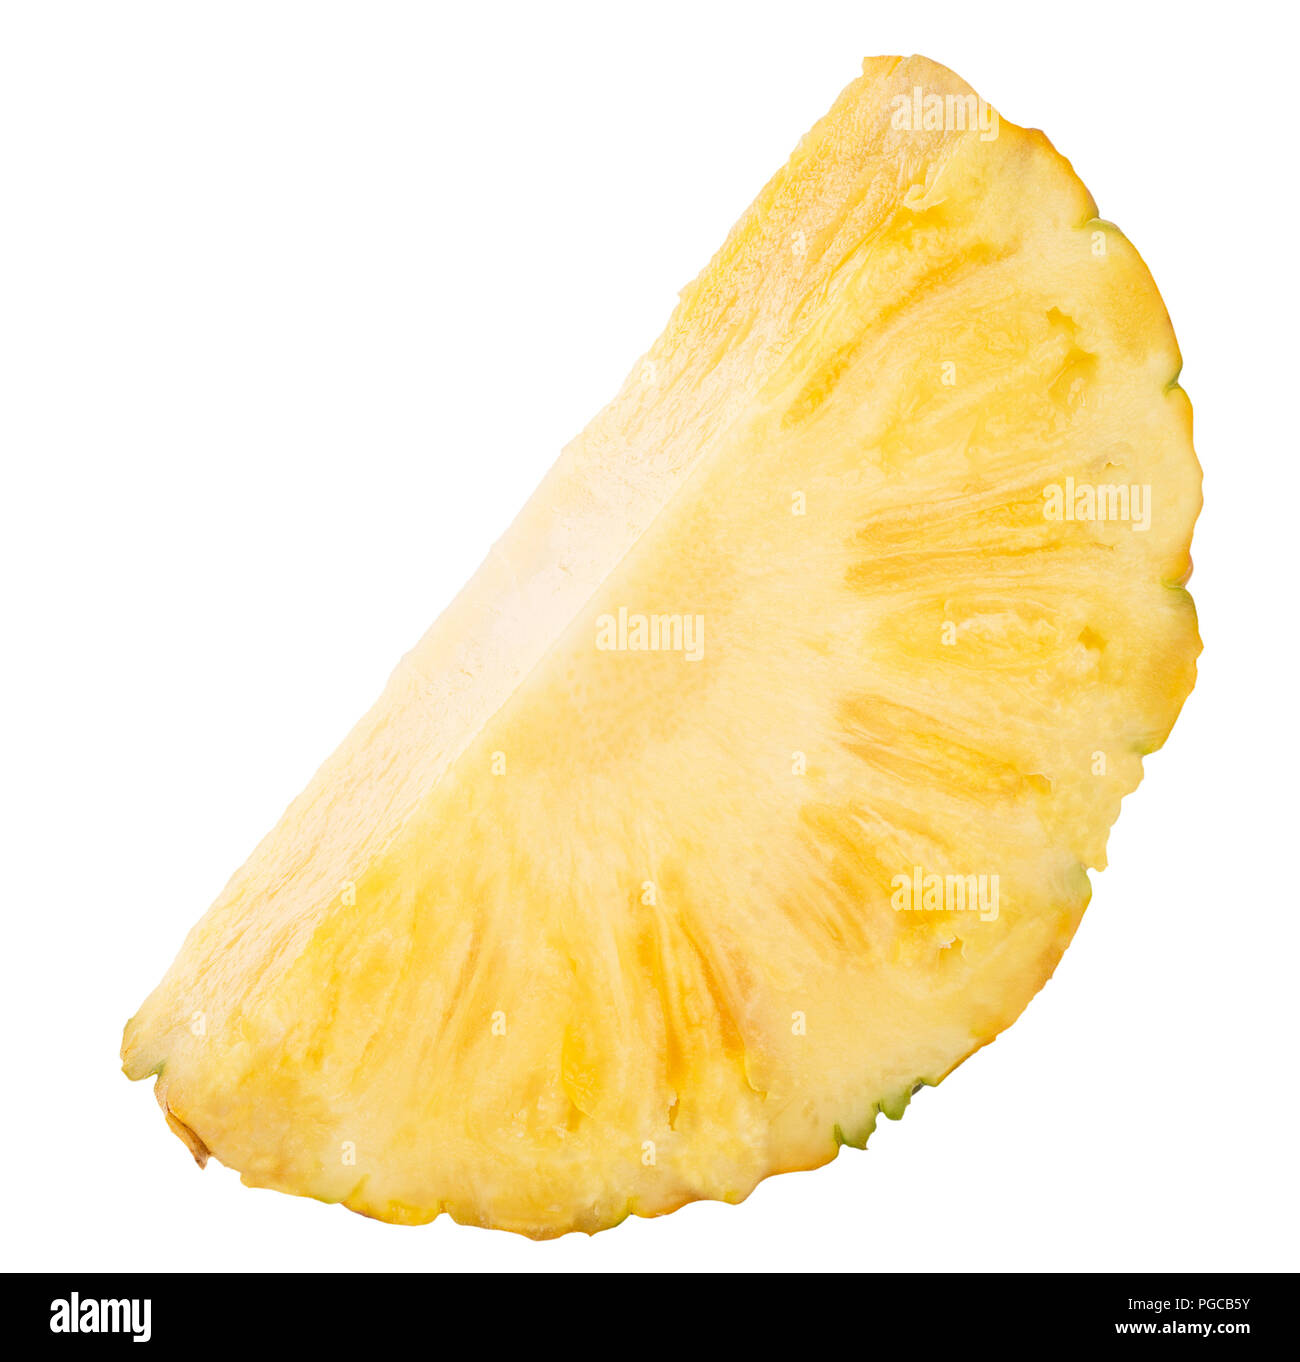 Ananasscheibe isoliert auf einem weißen Hintergrund. Stockfoto